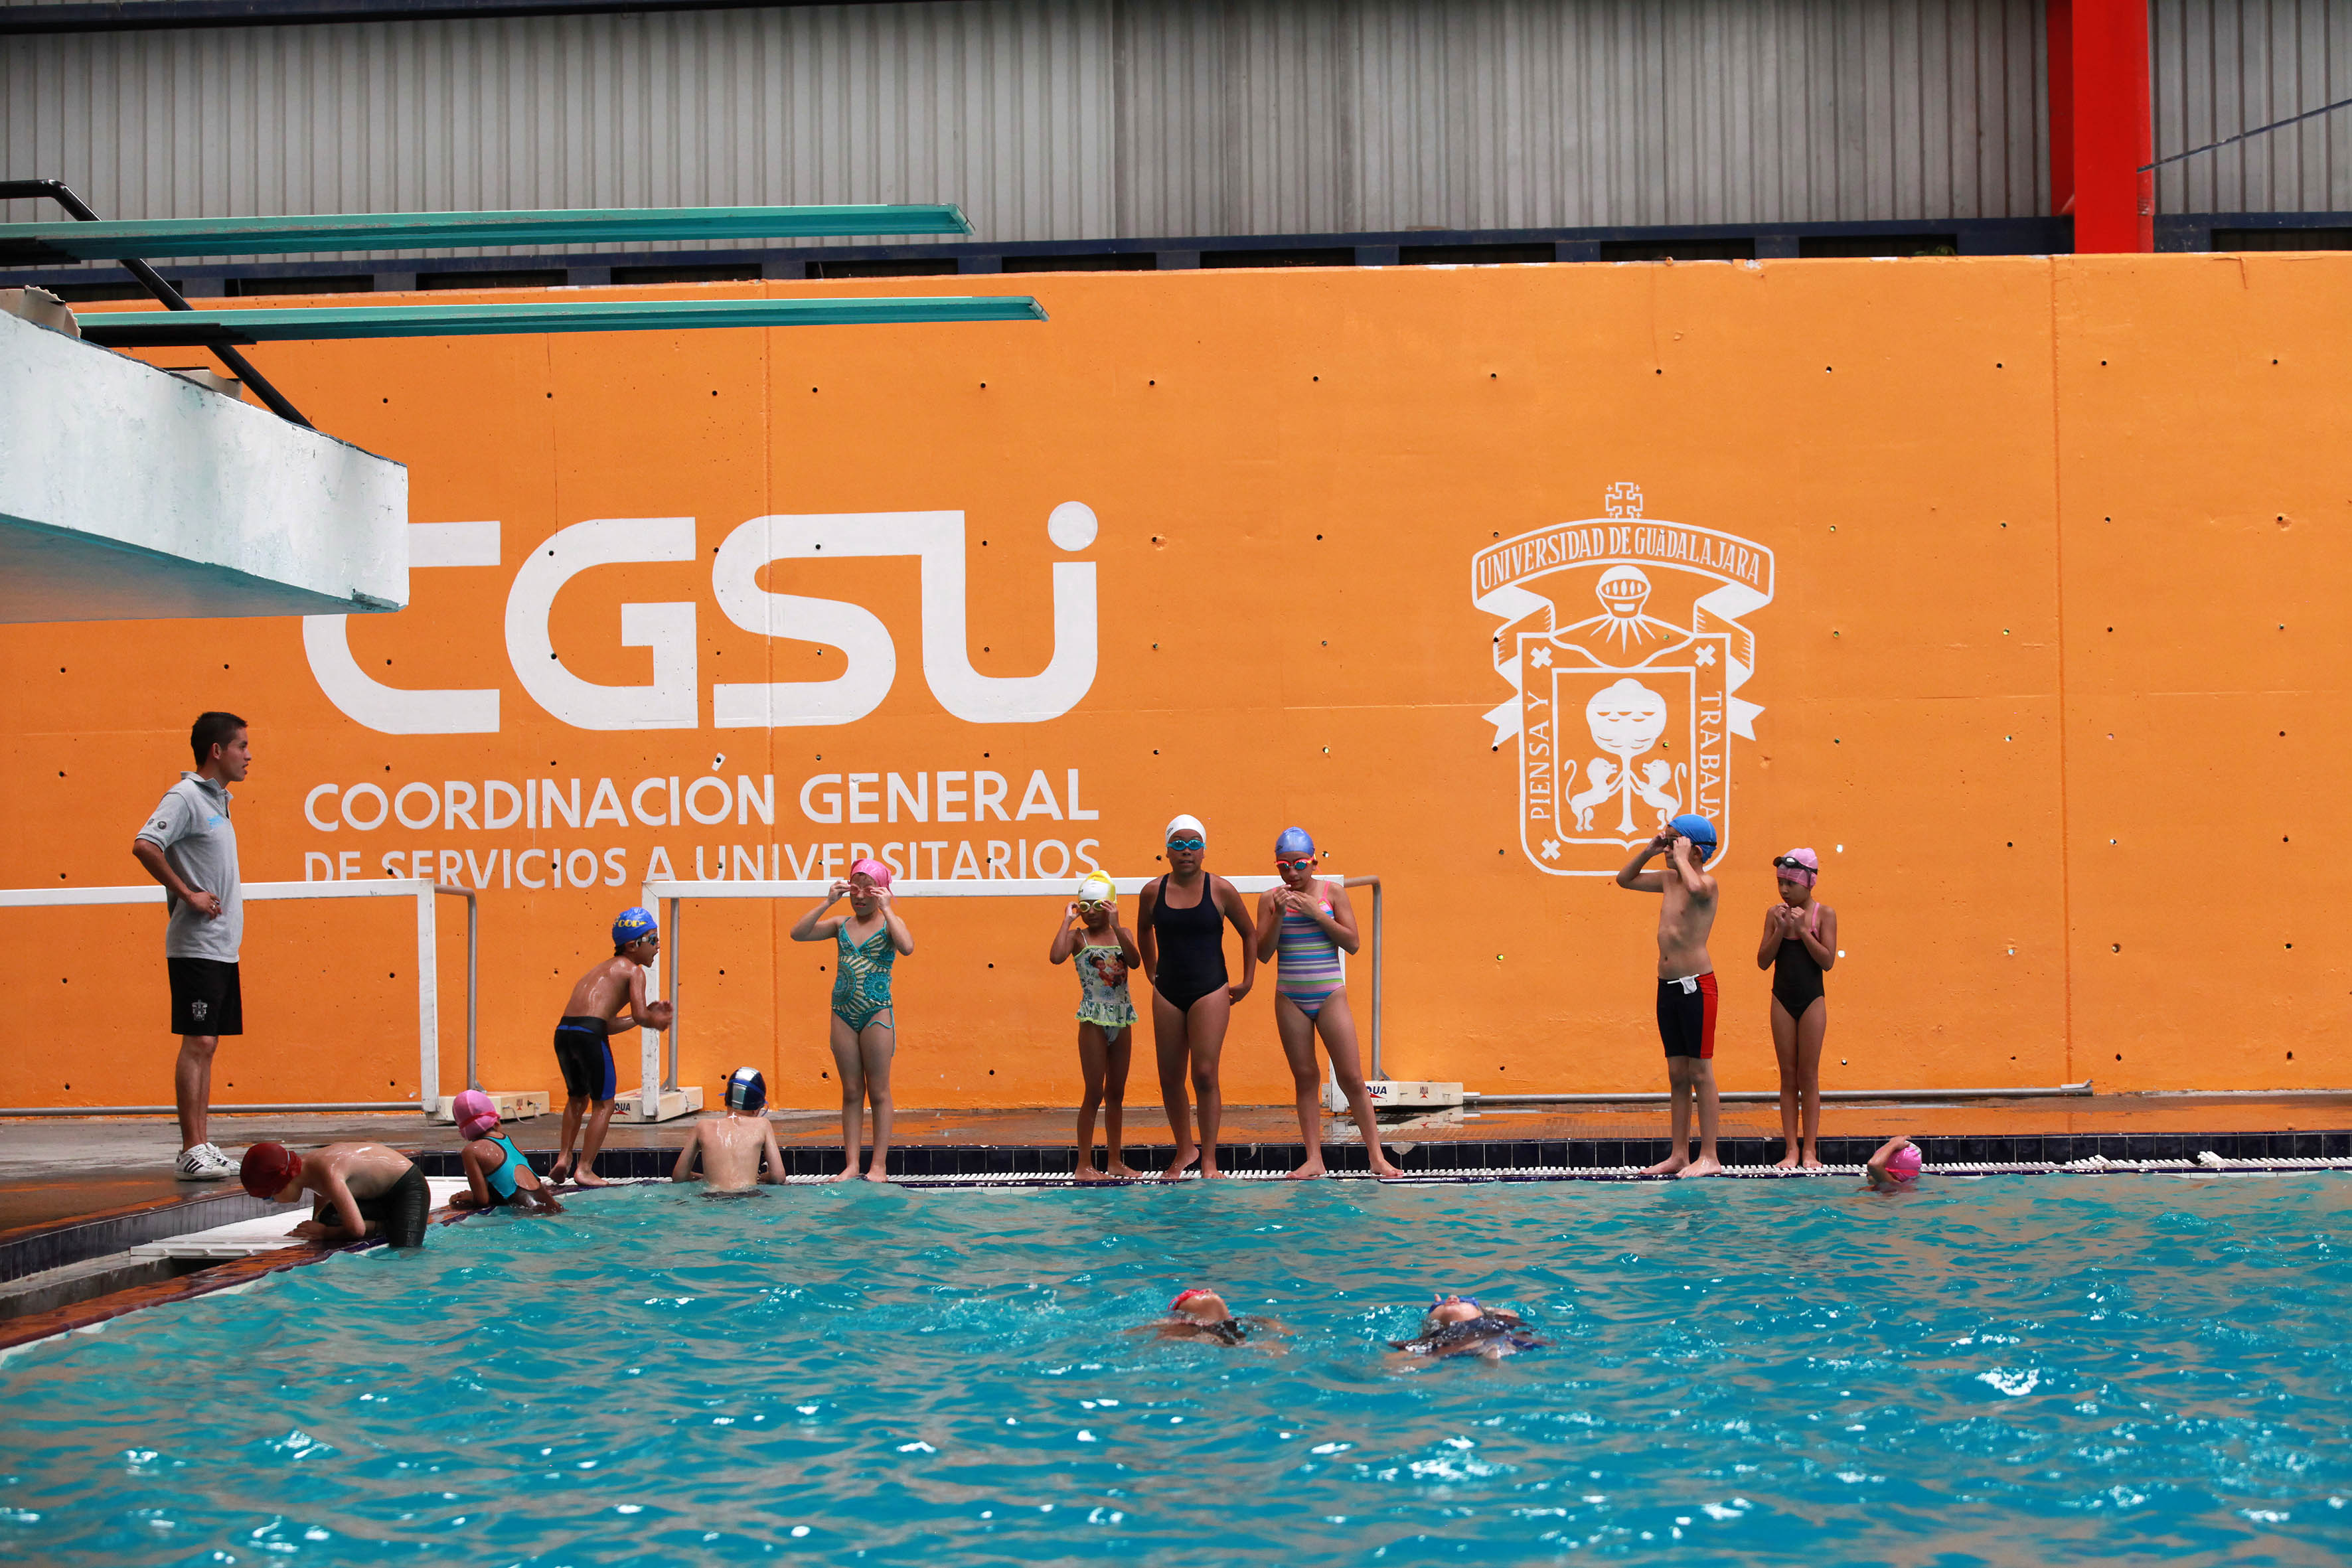 Habrá en 2015 más actividades en la Alberca Olímpica de la UdeG |  Universidad de Guadalajara